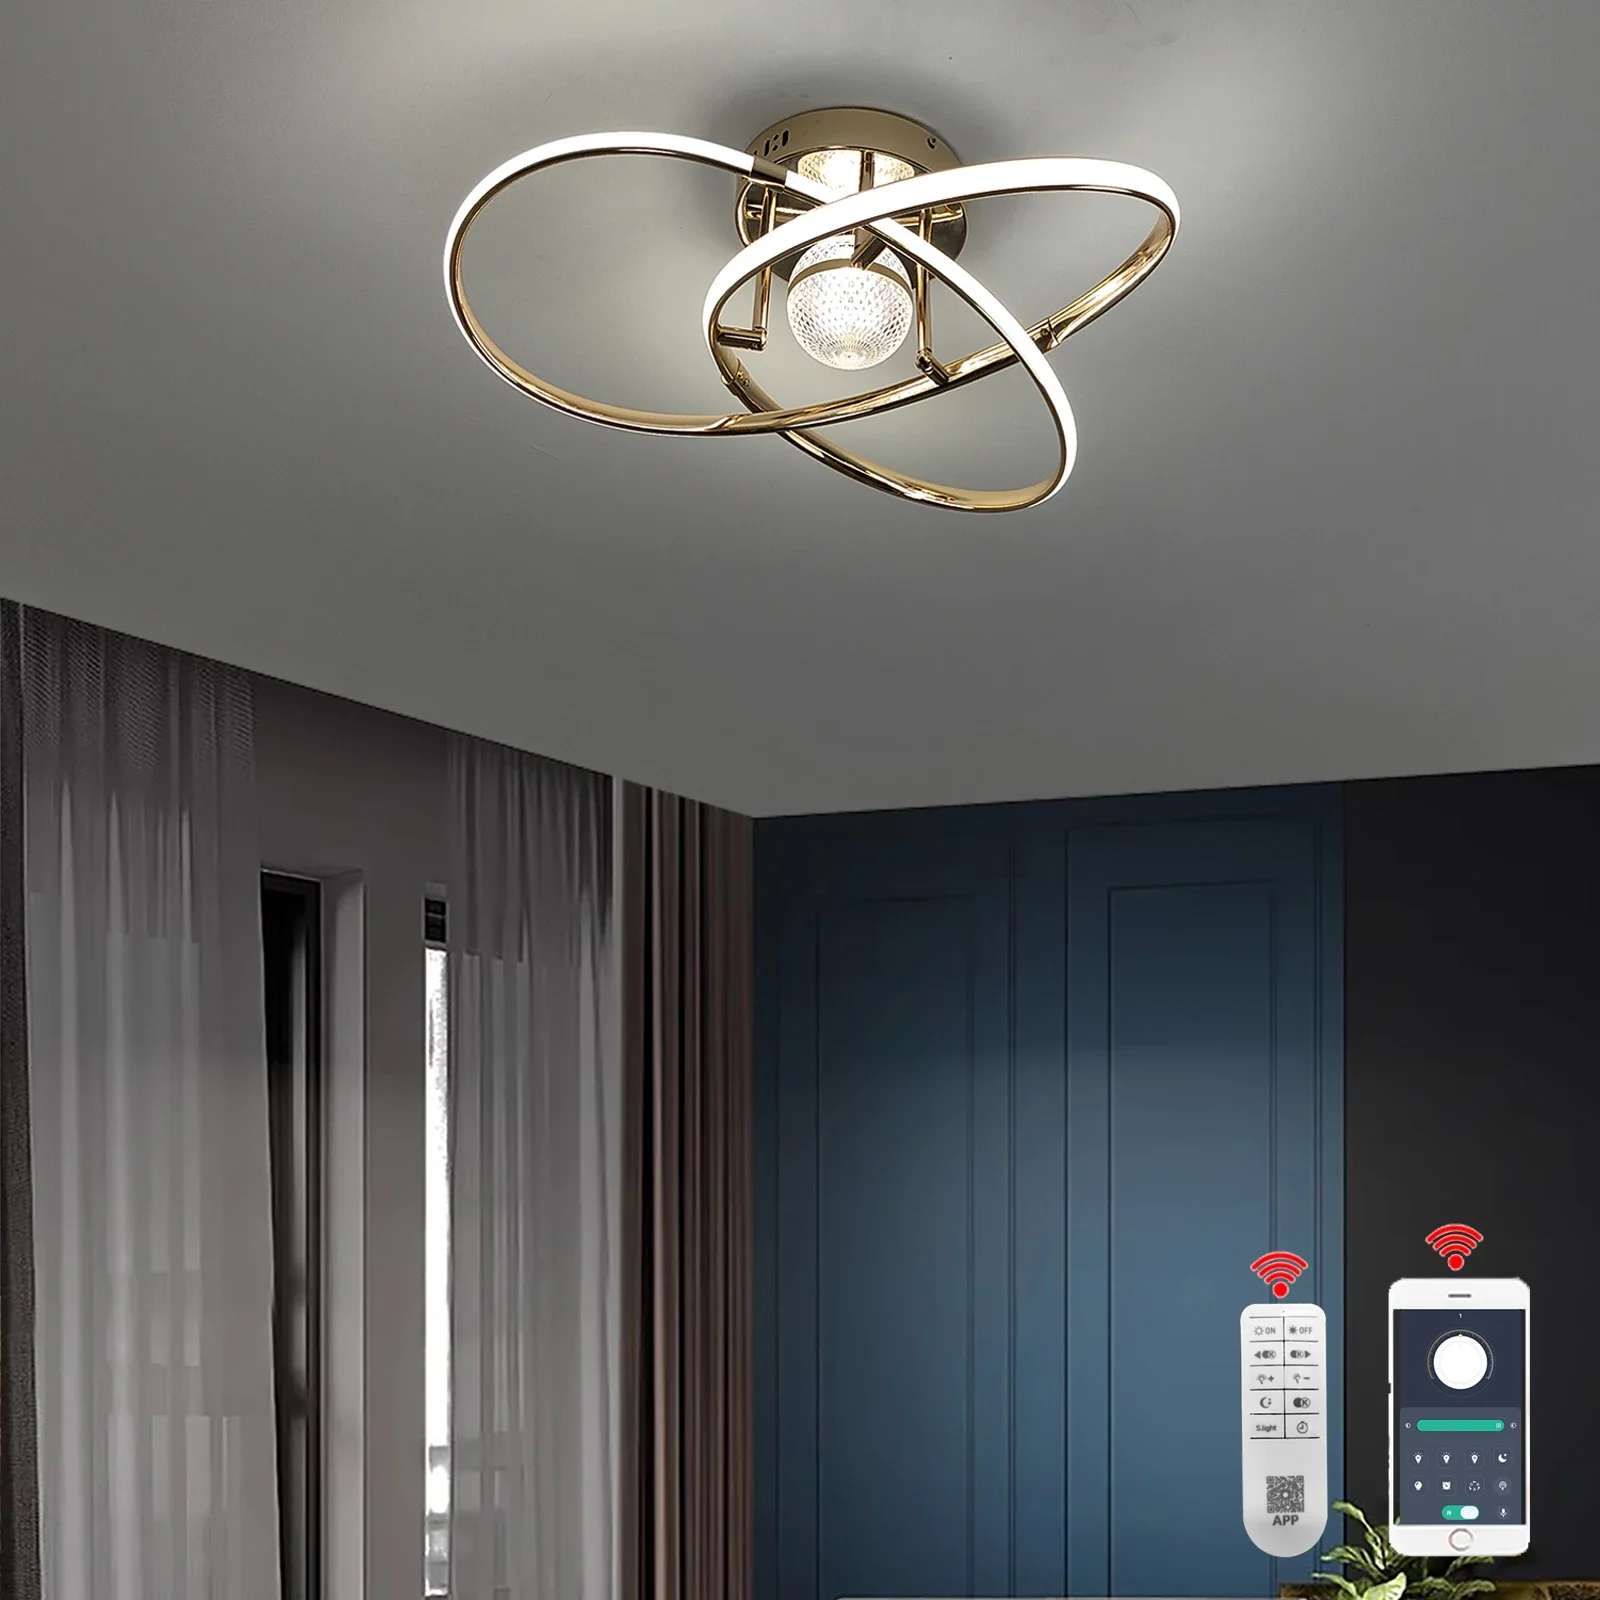 

Modern Chandelier Lighting Chandelier For Living Bedroom Glod/Chrome Led Ceiling Light D54cm Ceiling Lamp lustre Alexa/APP/Remot